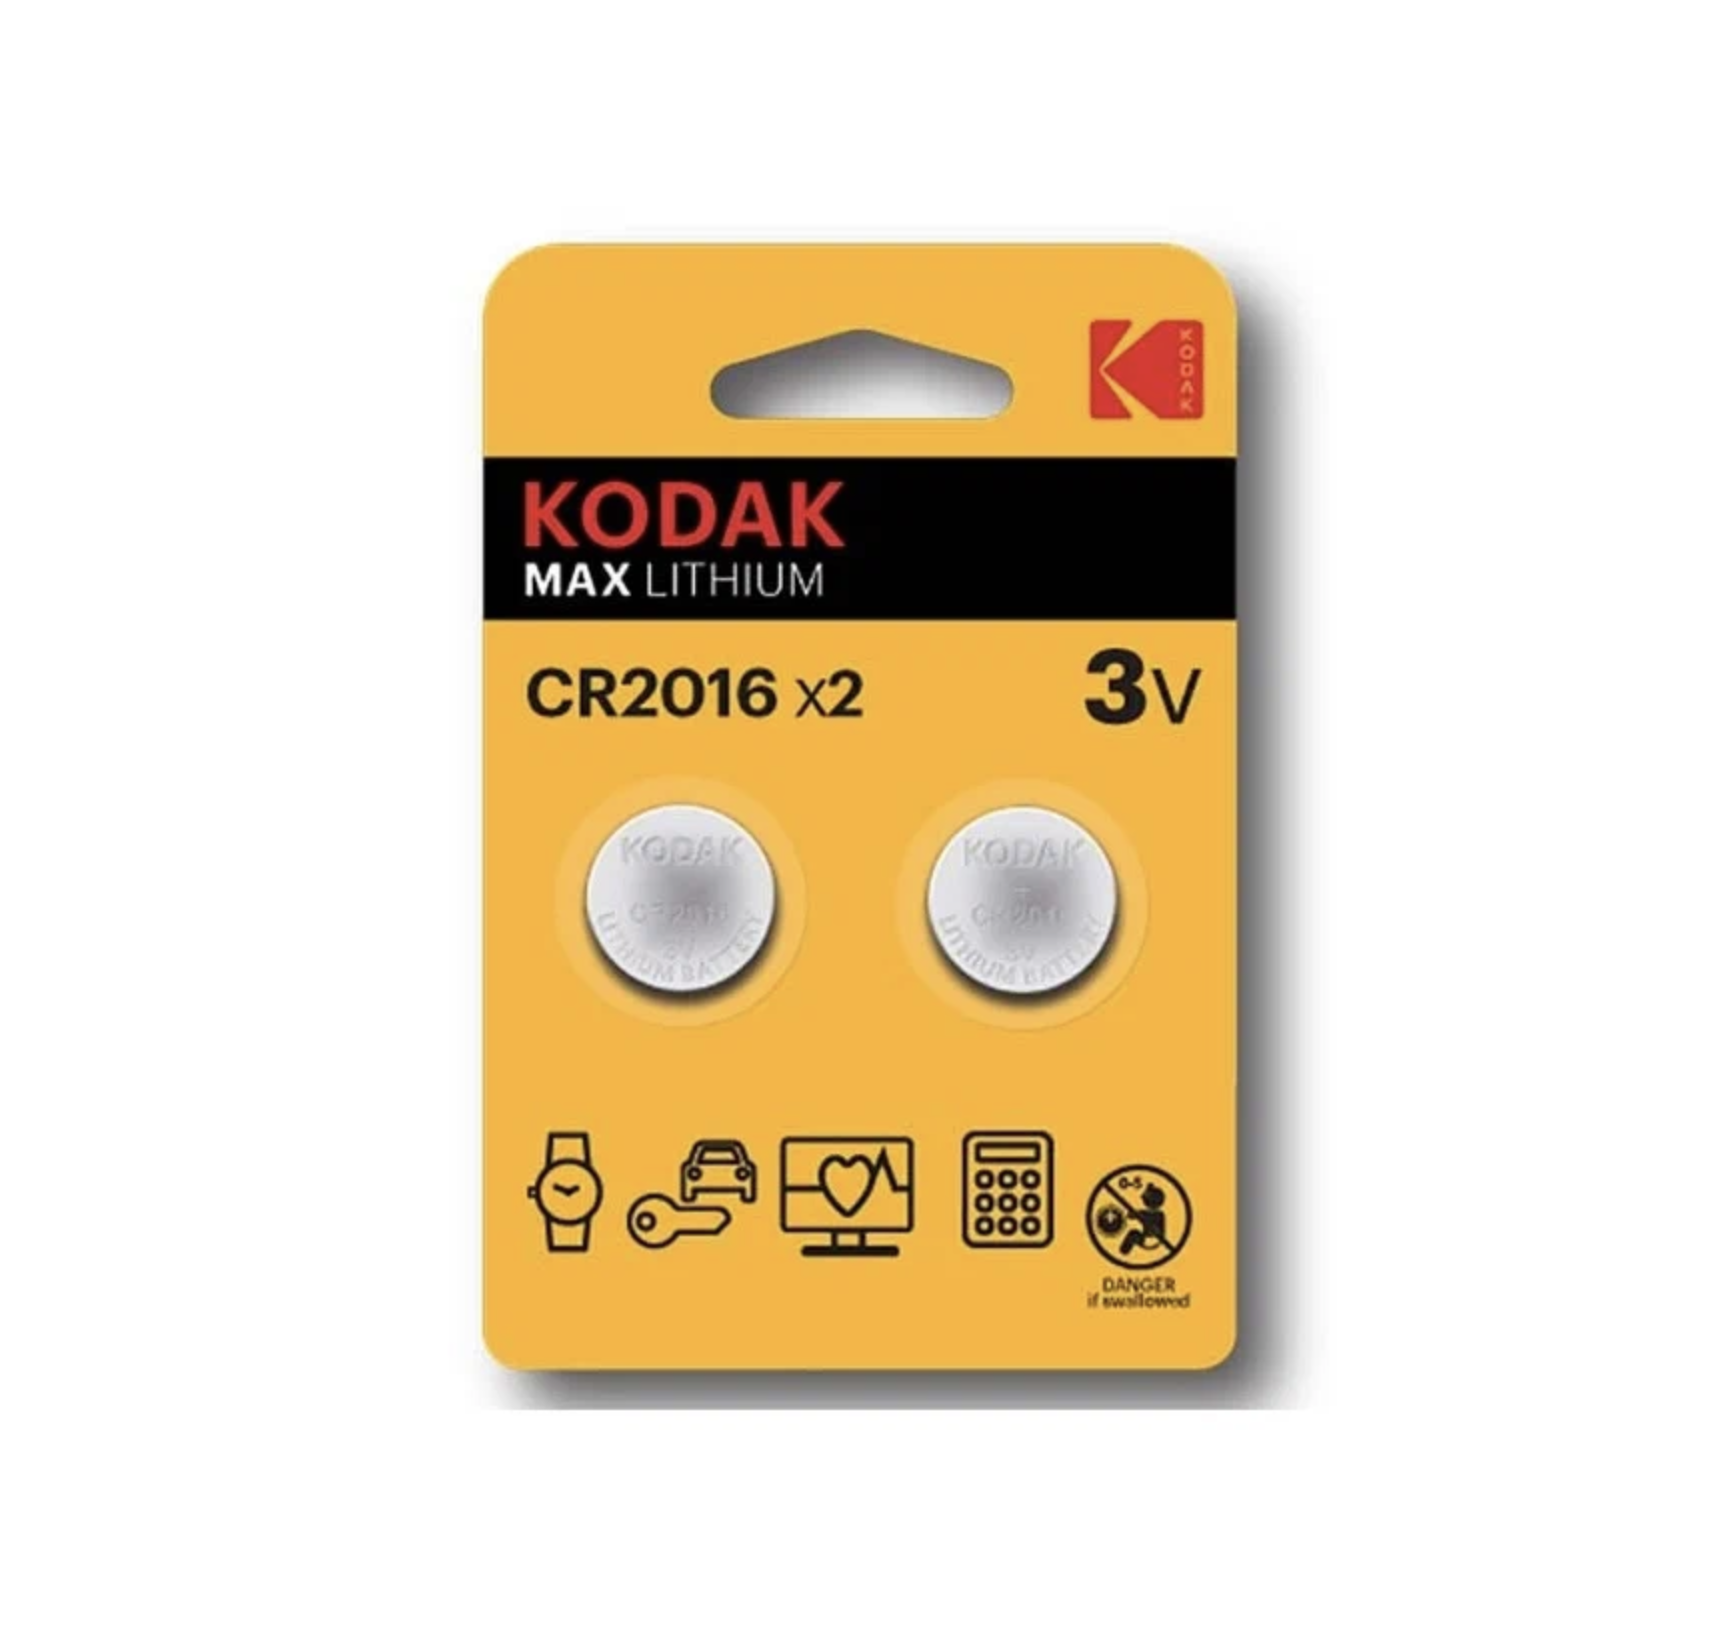   / Kodak -  Max Lithium CR2016 3V 2 